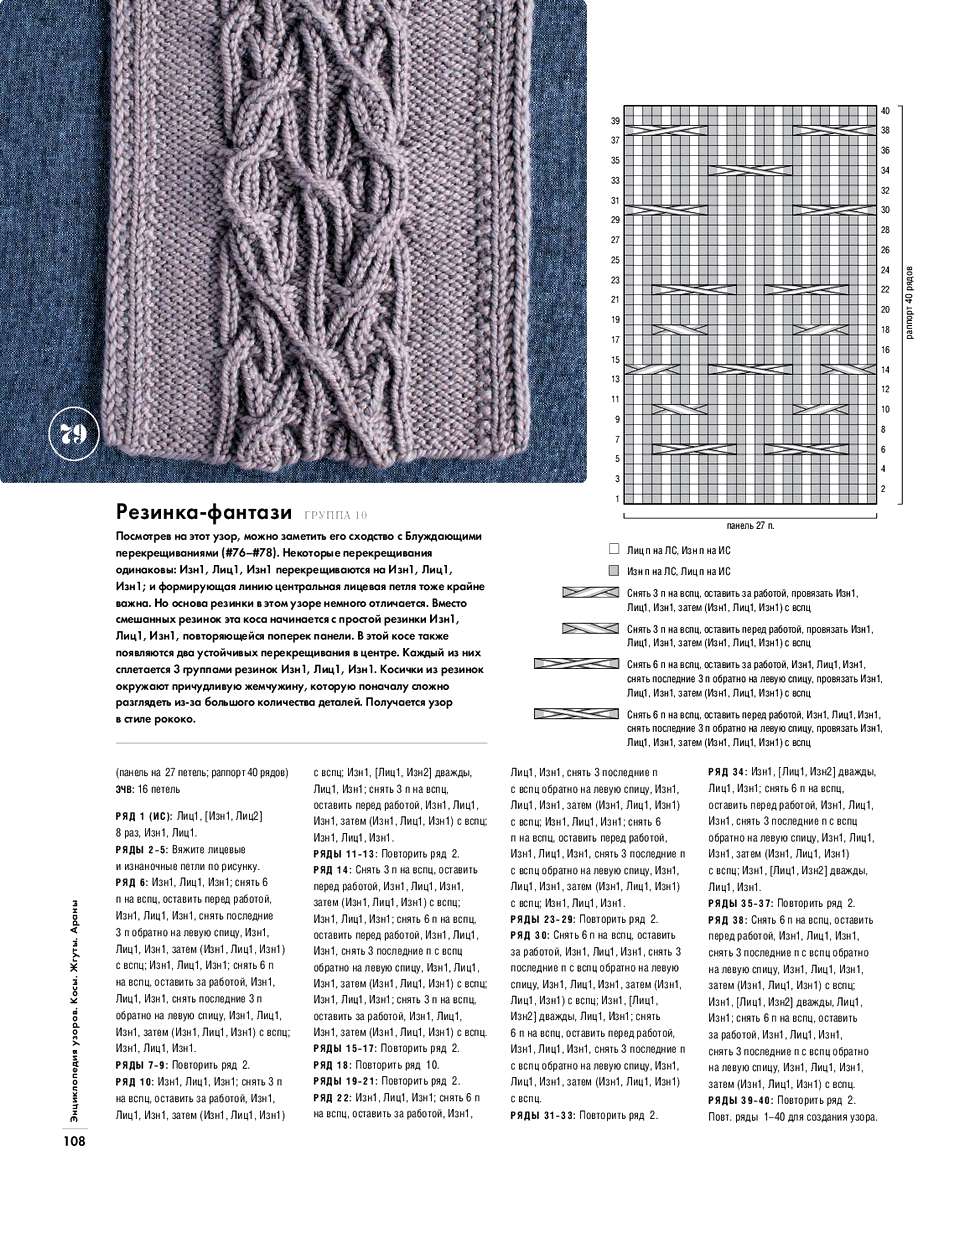 Вязание аранов спицами: описание техники и базовых элементов (110 фото)